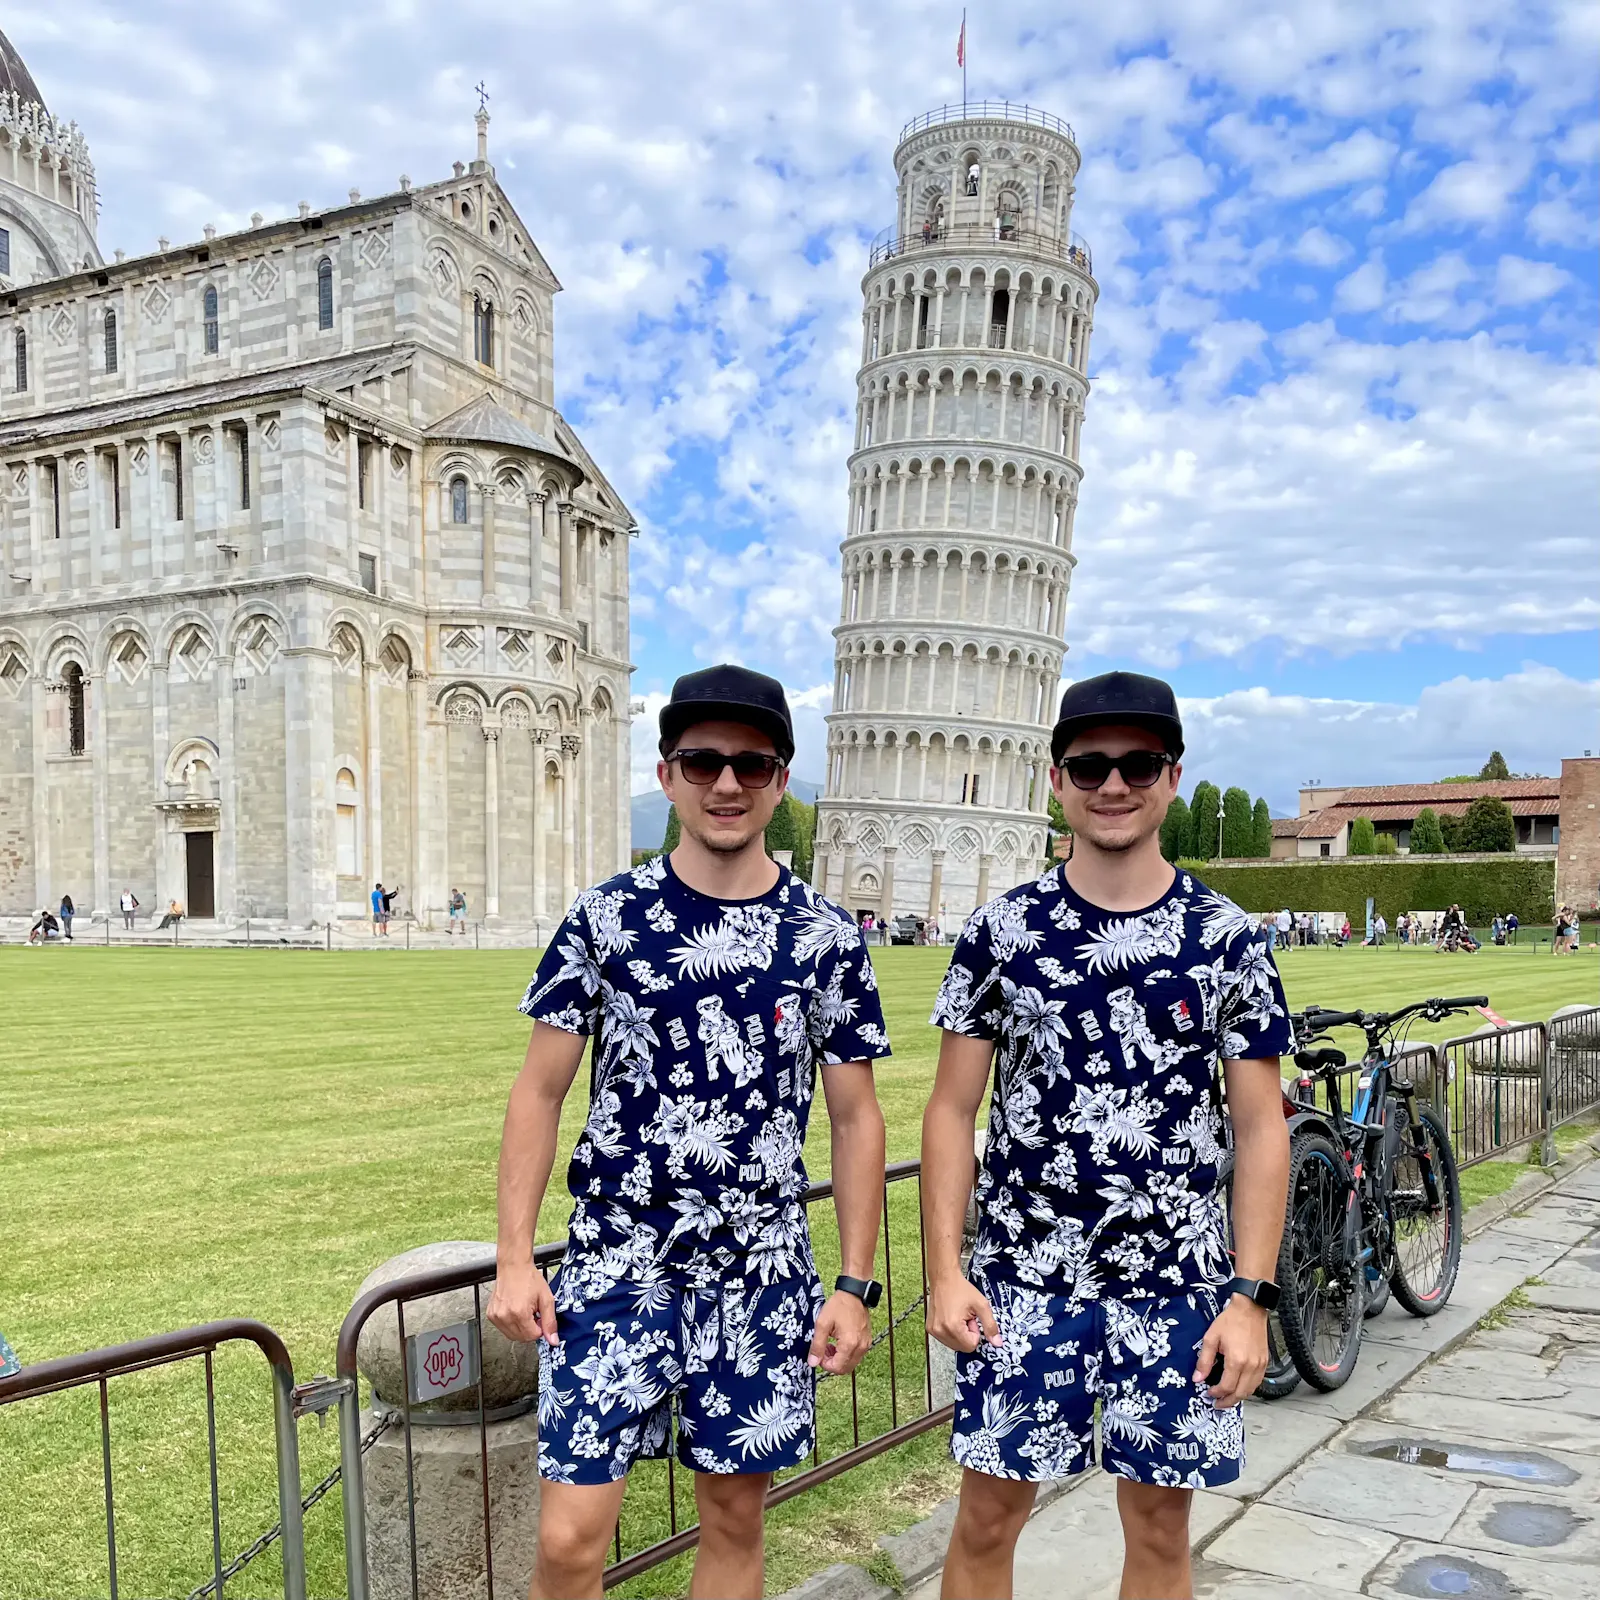 Tinz Twins am Schiefen Turm von Pisa